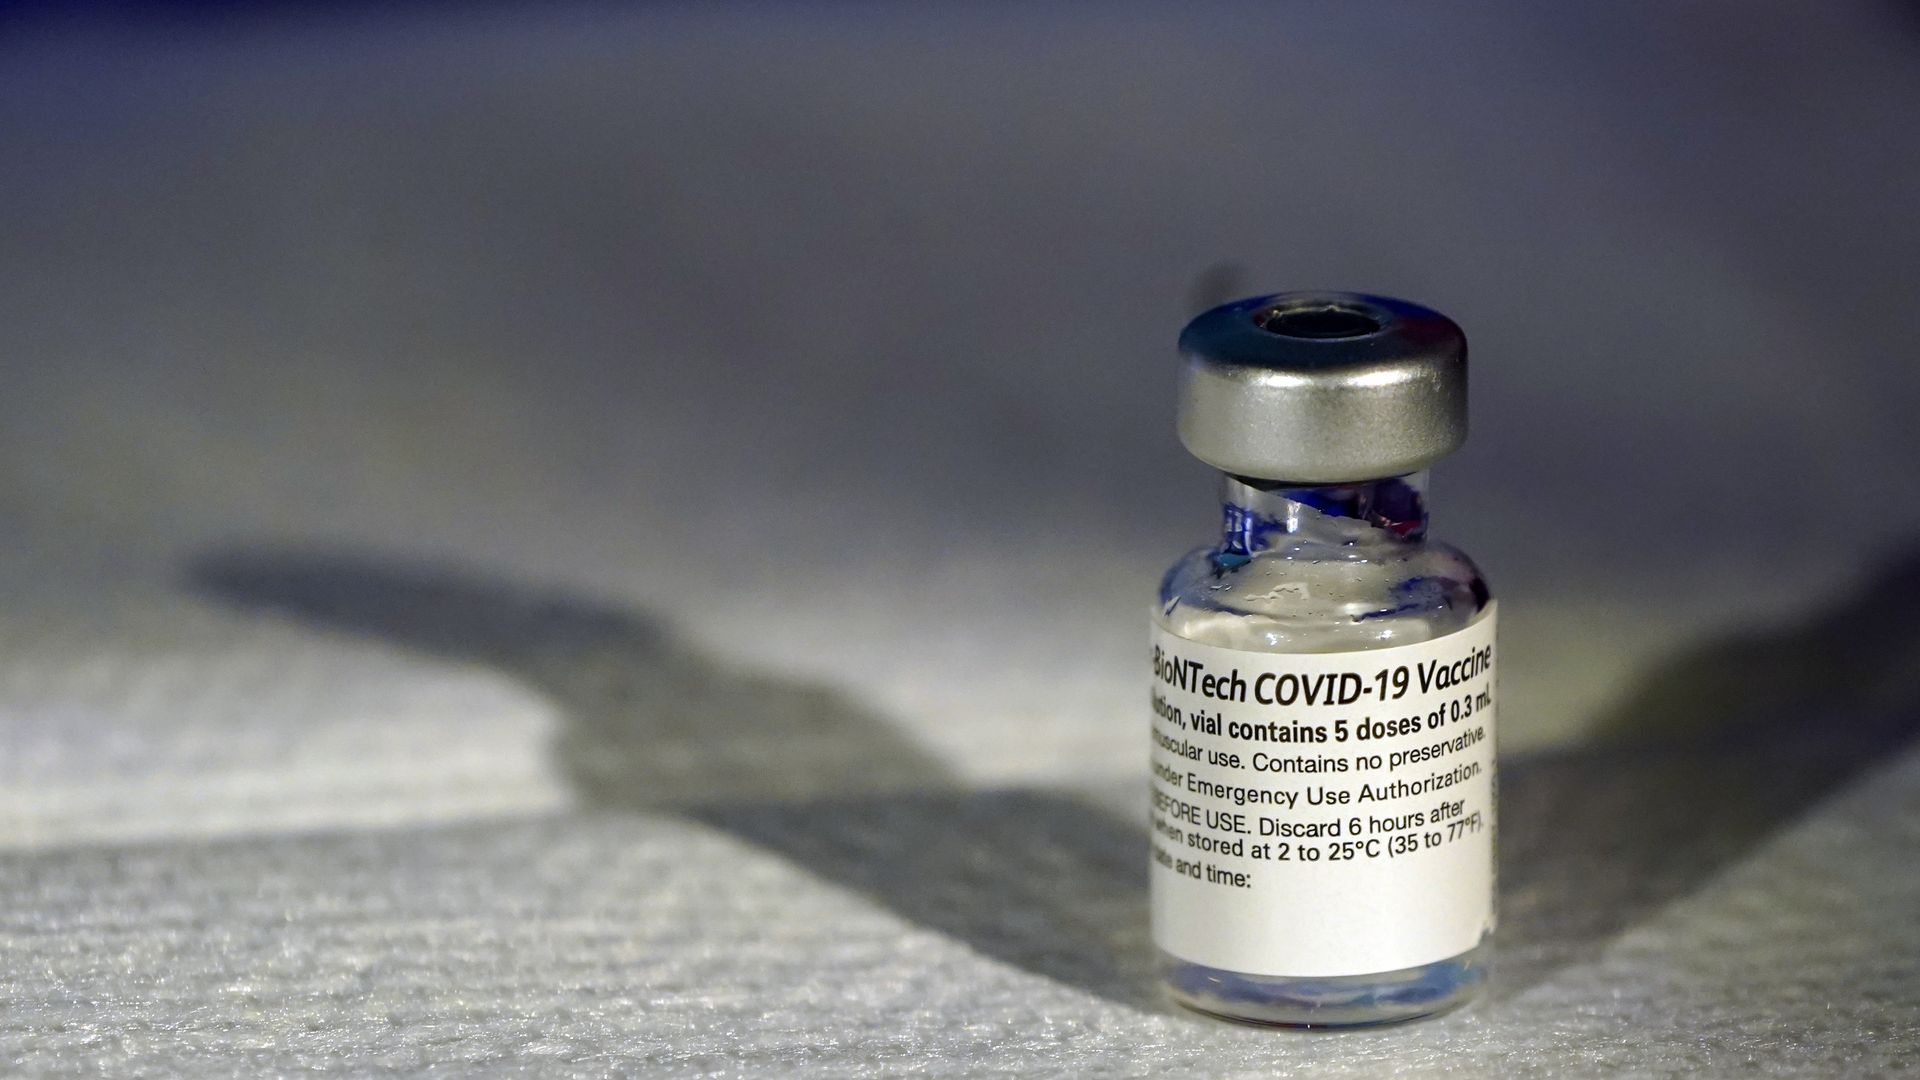 A COVID-19 vaccine vial